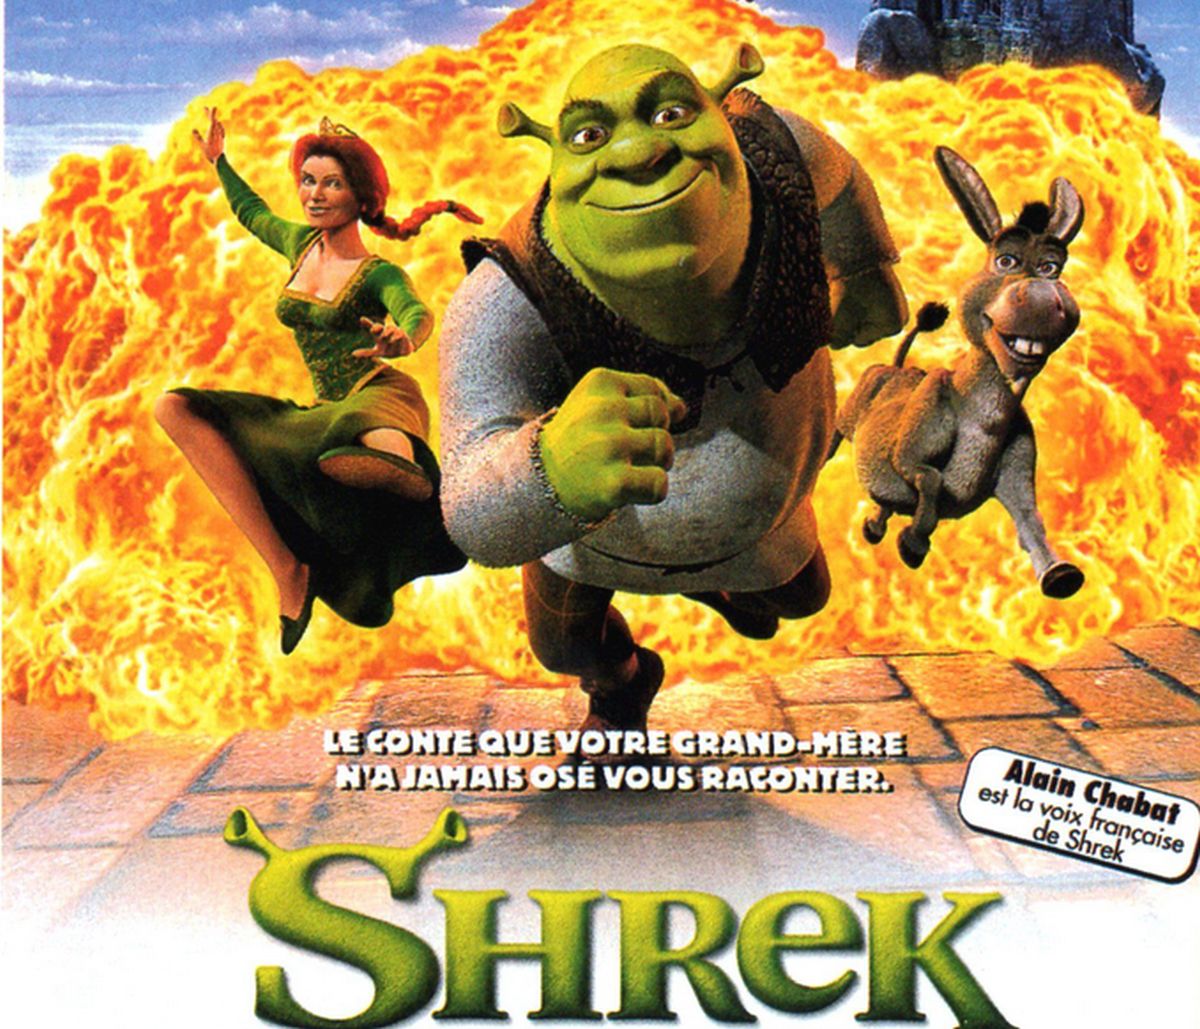  La voix française de Shrek n’était initialement pas celle d’Alain Chabat